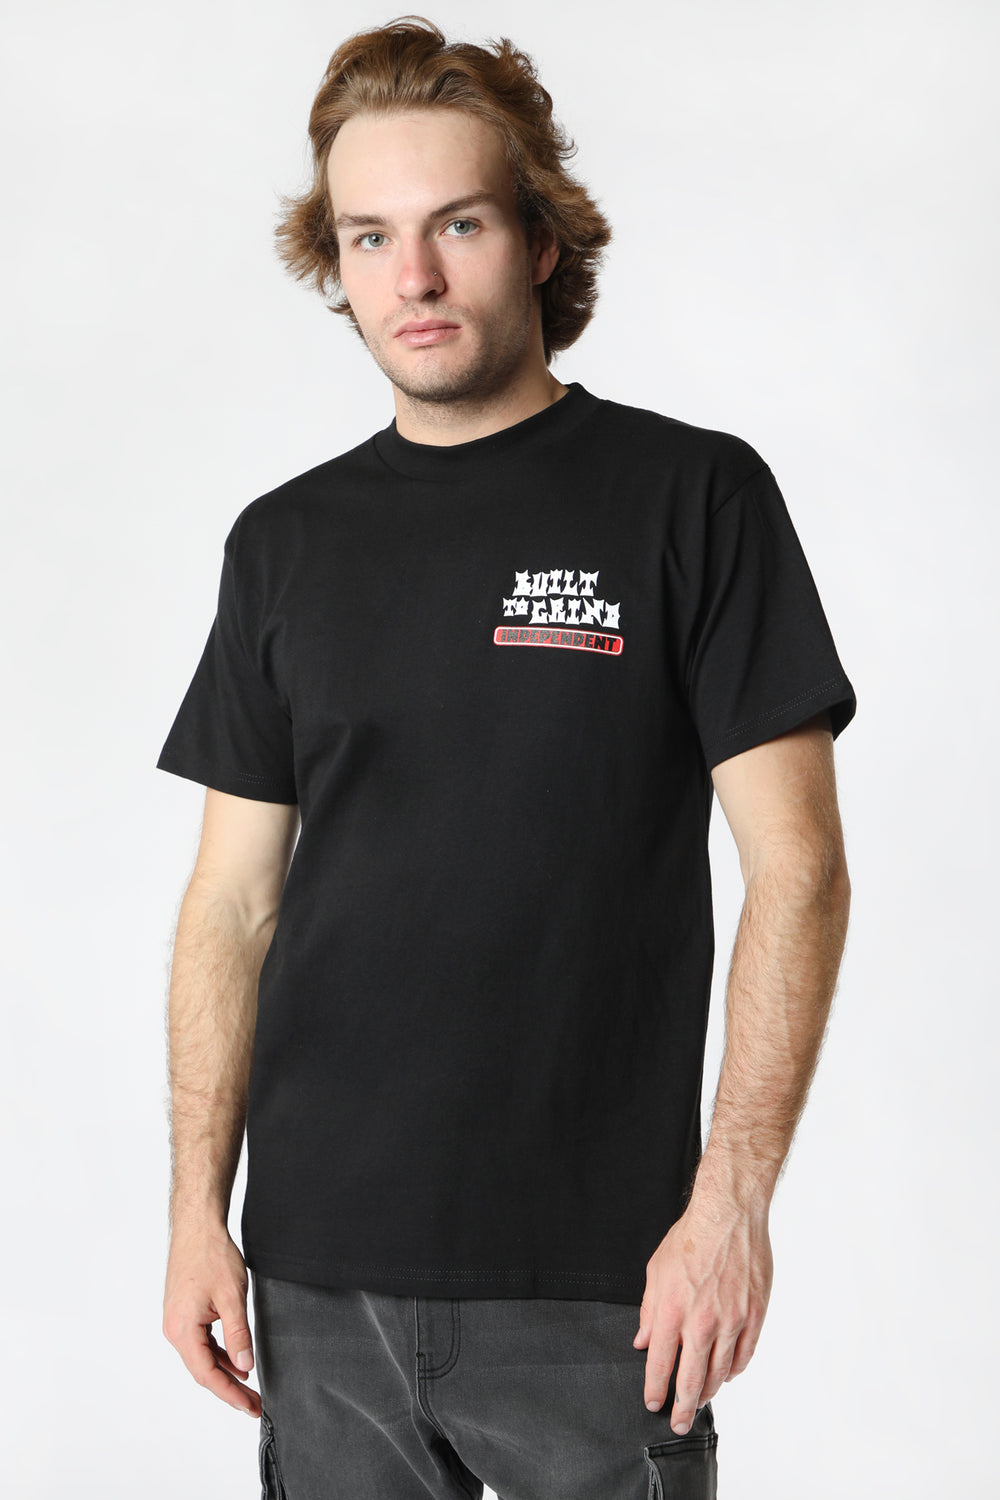 T-Shirt Spellbound Independent Black